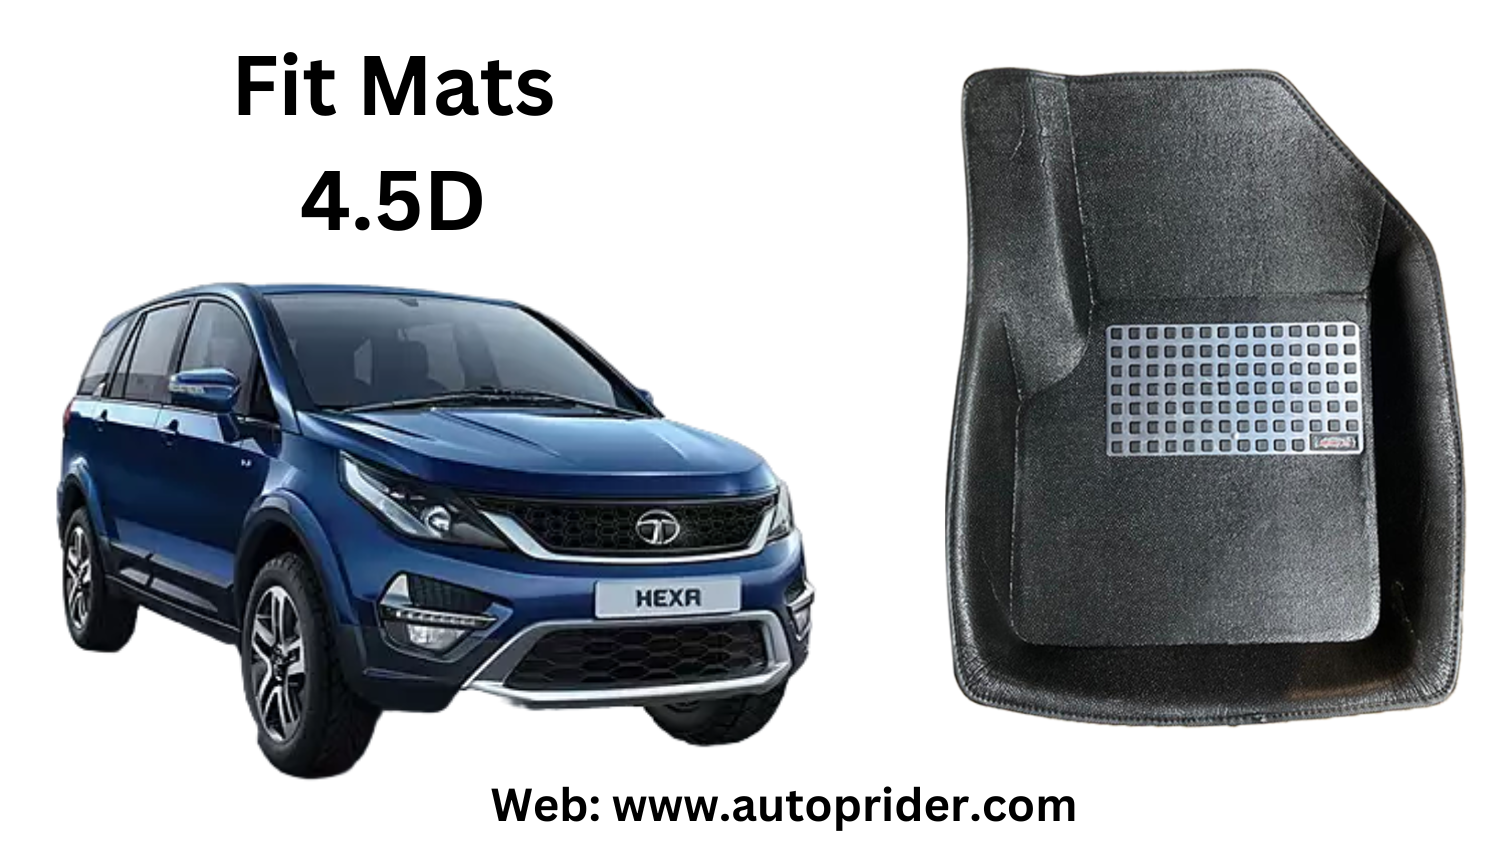 Autoprider | Fit Mats 4.5D Economy Car Mats for Tata Hexa